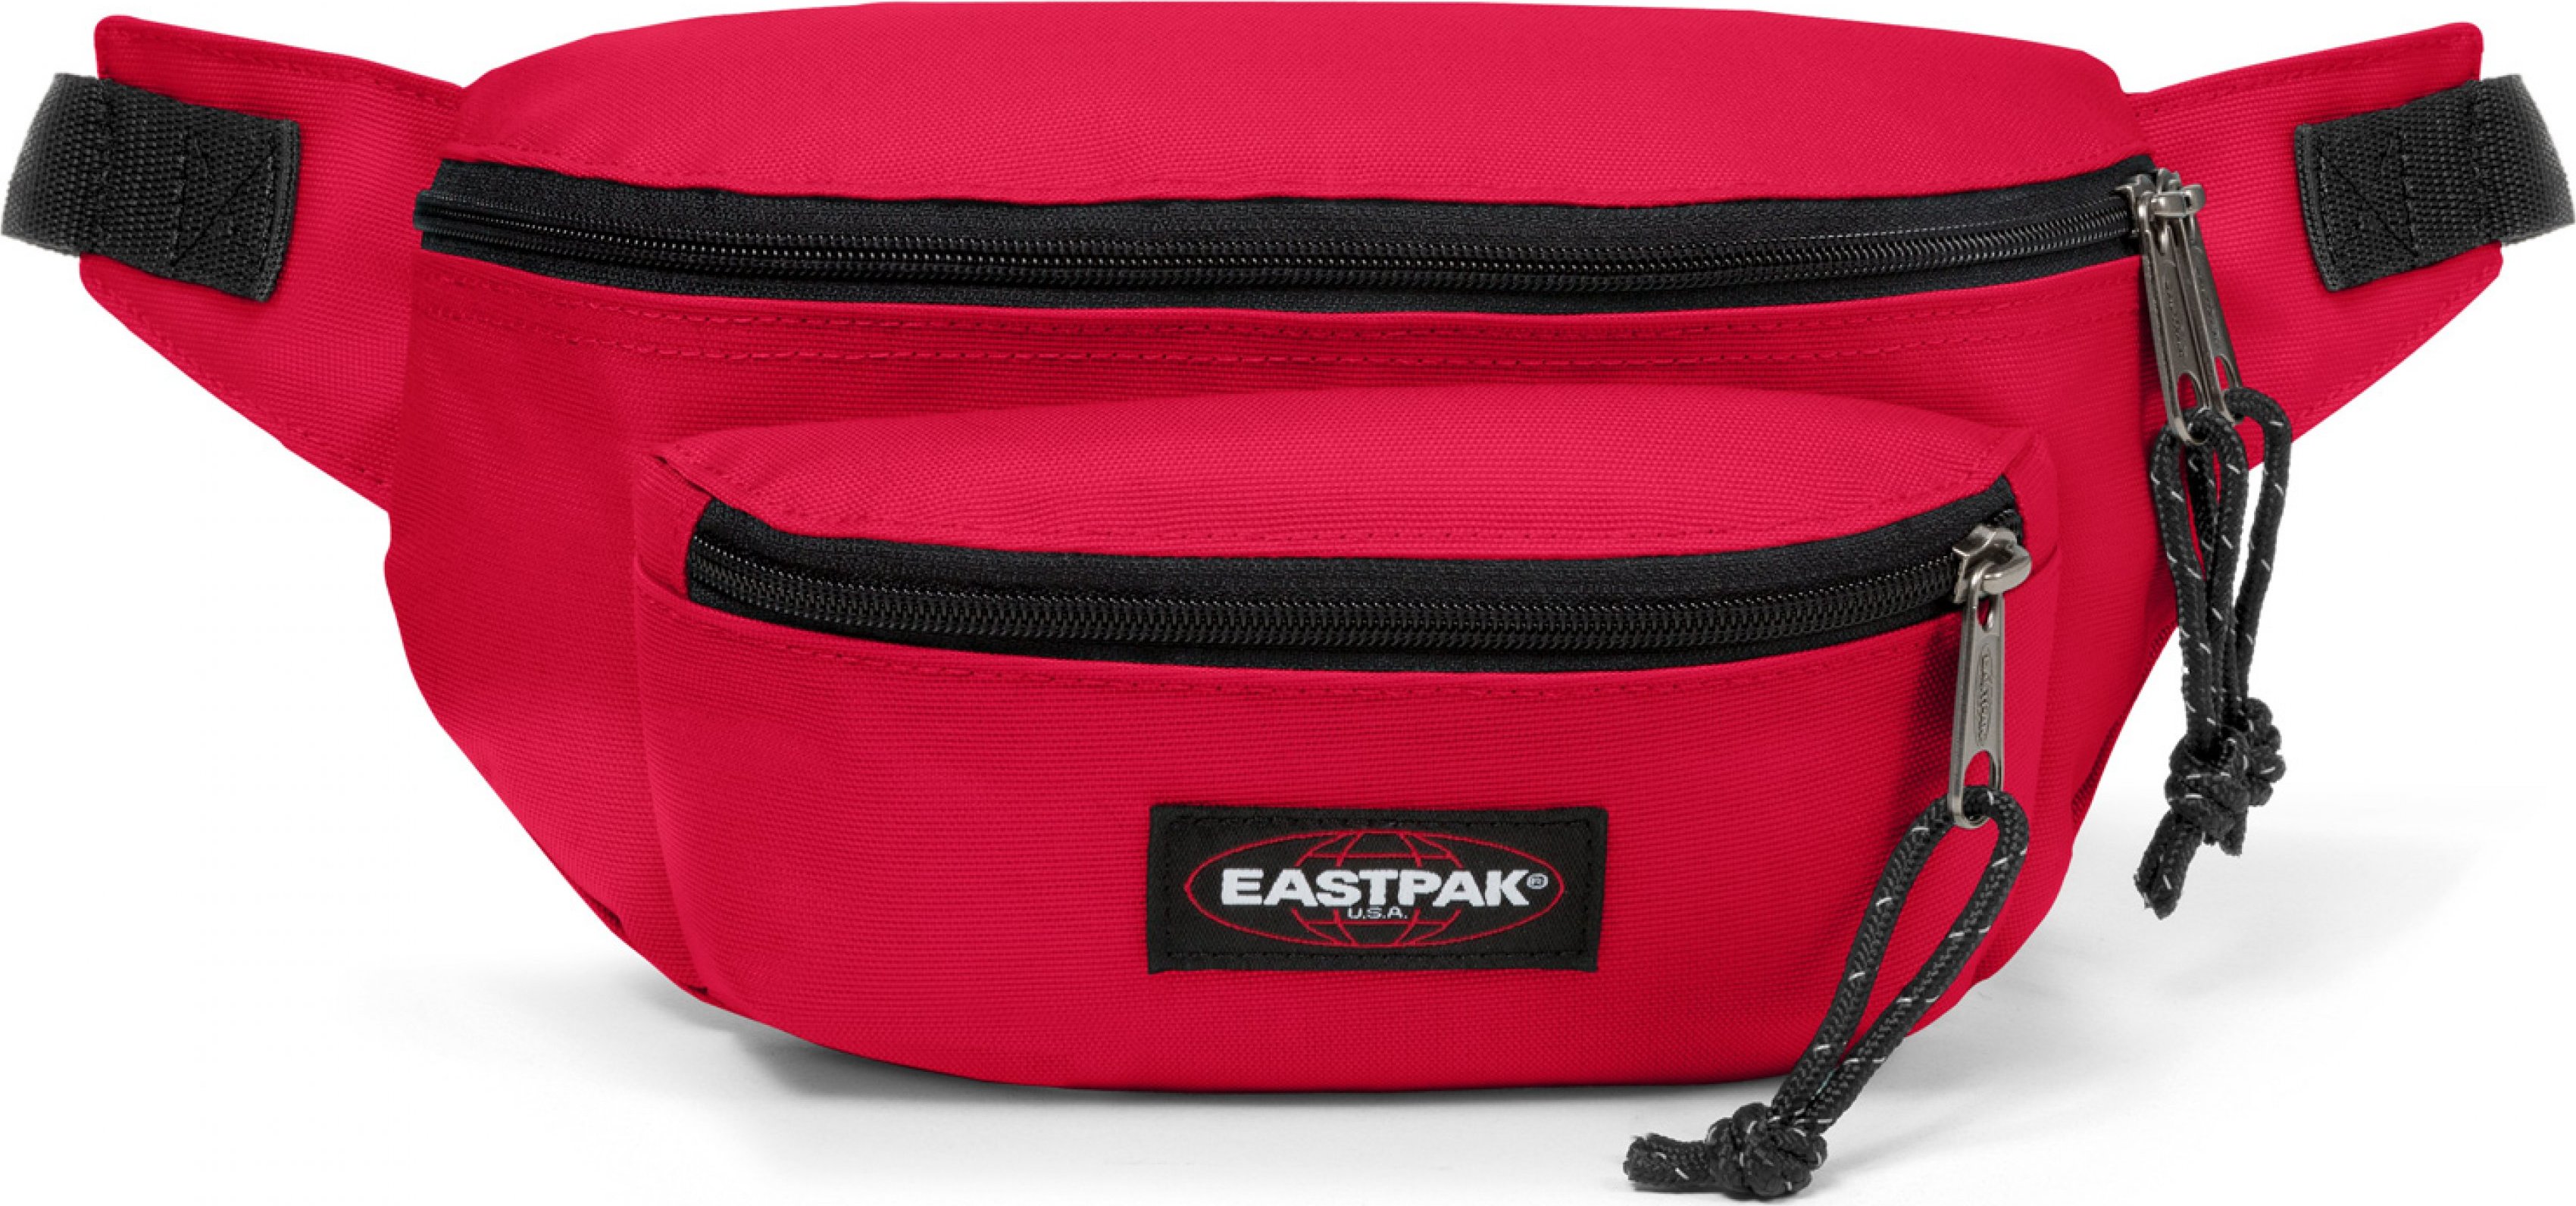 Eastpak Doggy Bag Sailor Red